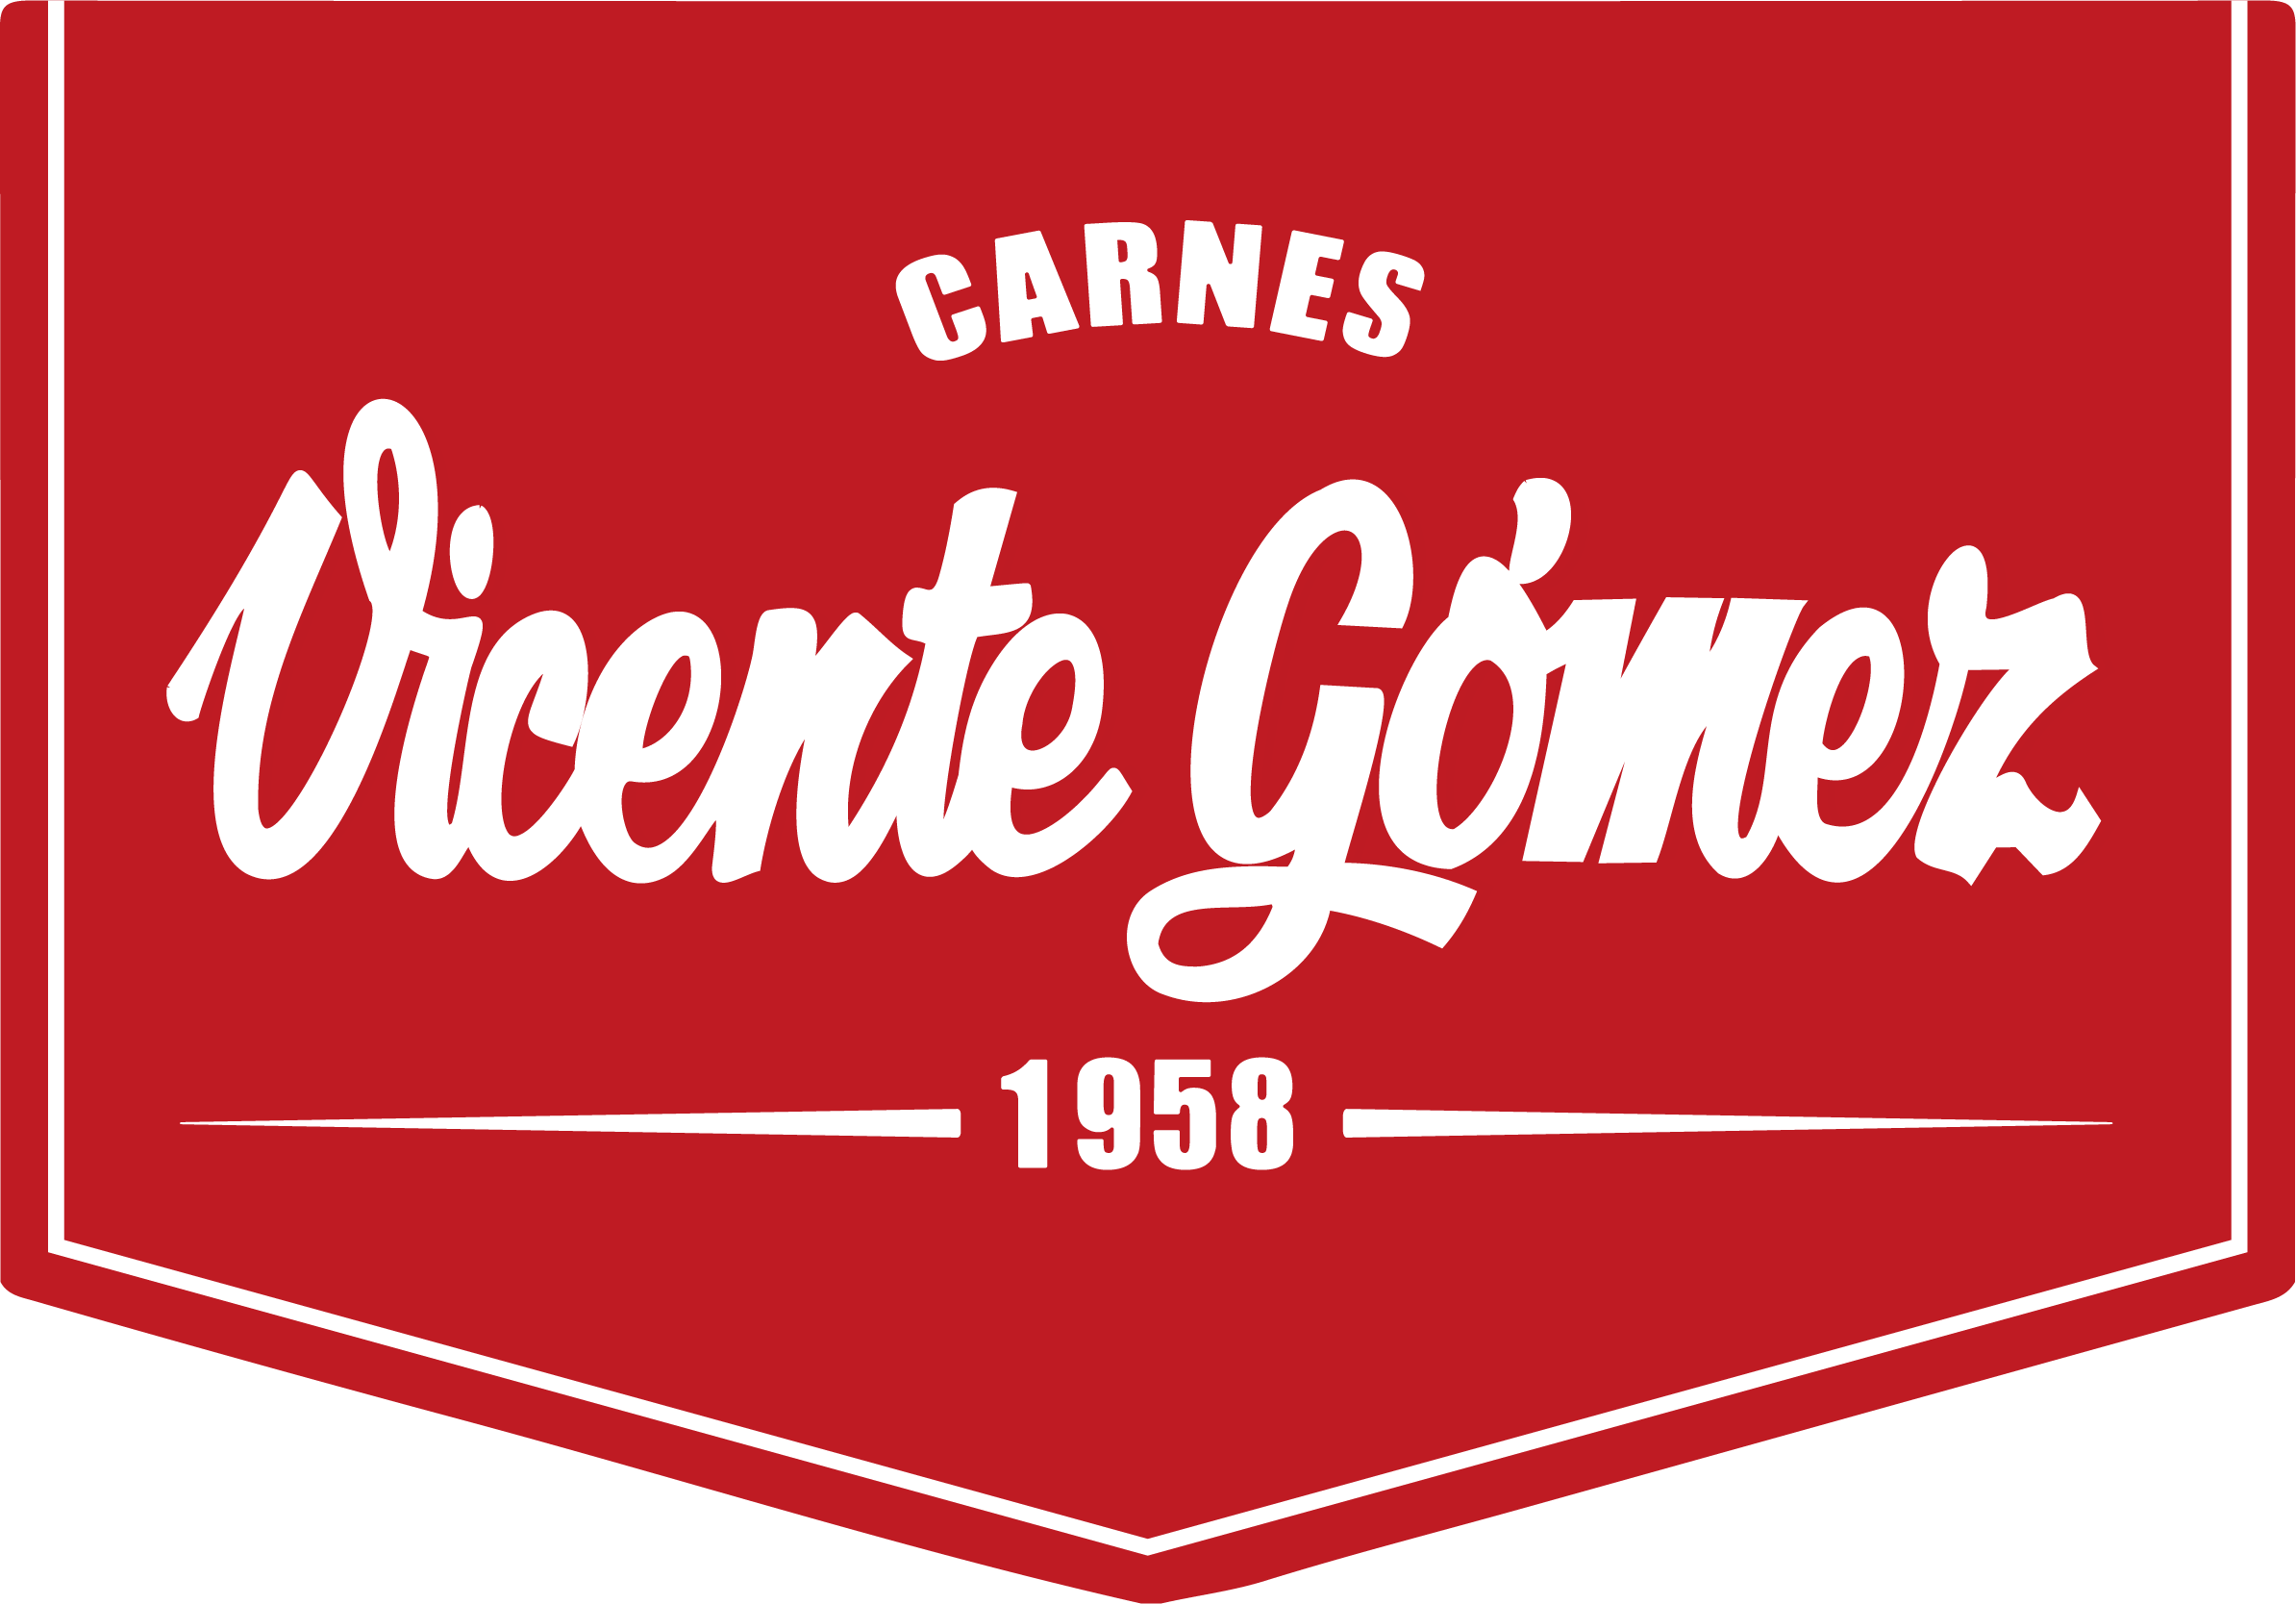 Carnes Vicente Gómez